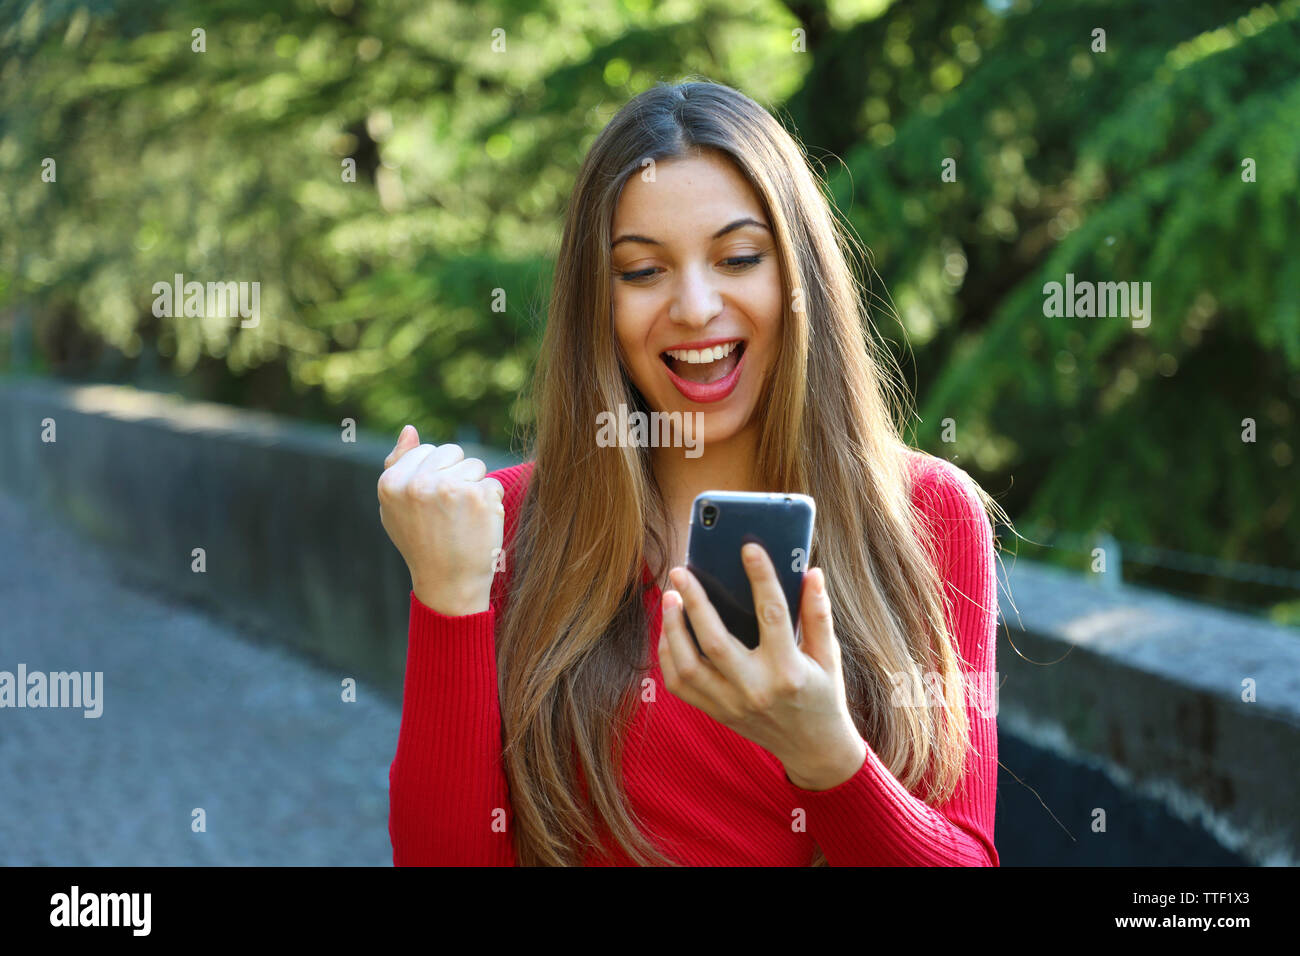 Euphorisch Frau gerade Ihre Smart Phone und zeigt Sieger Geste outdoor Stockfoto